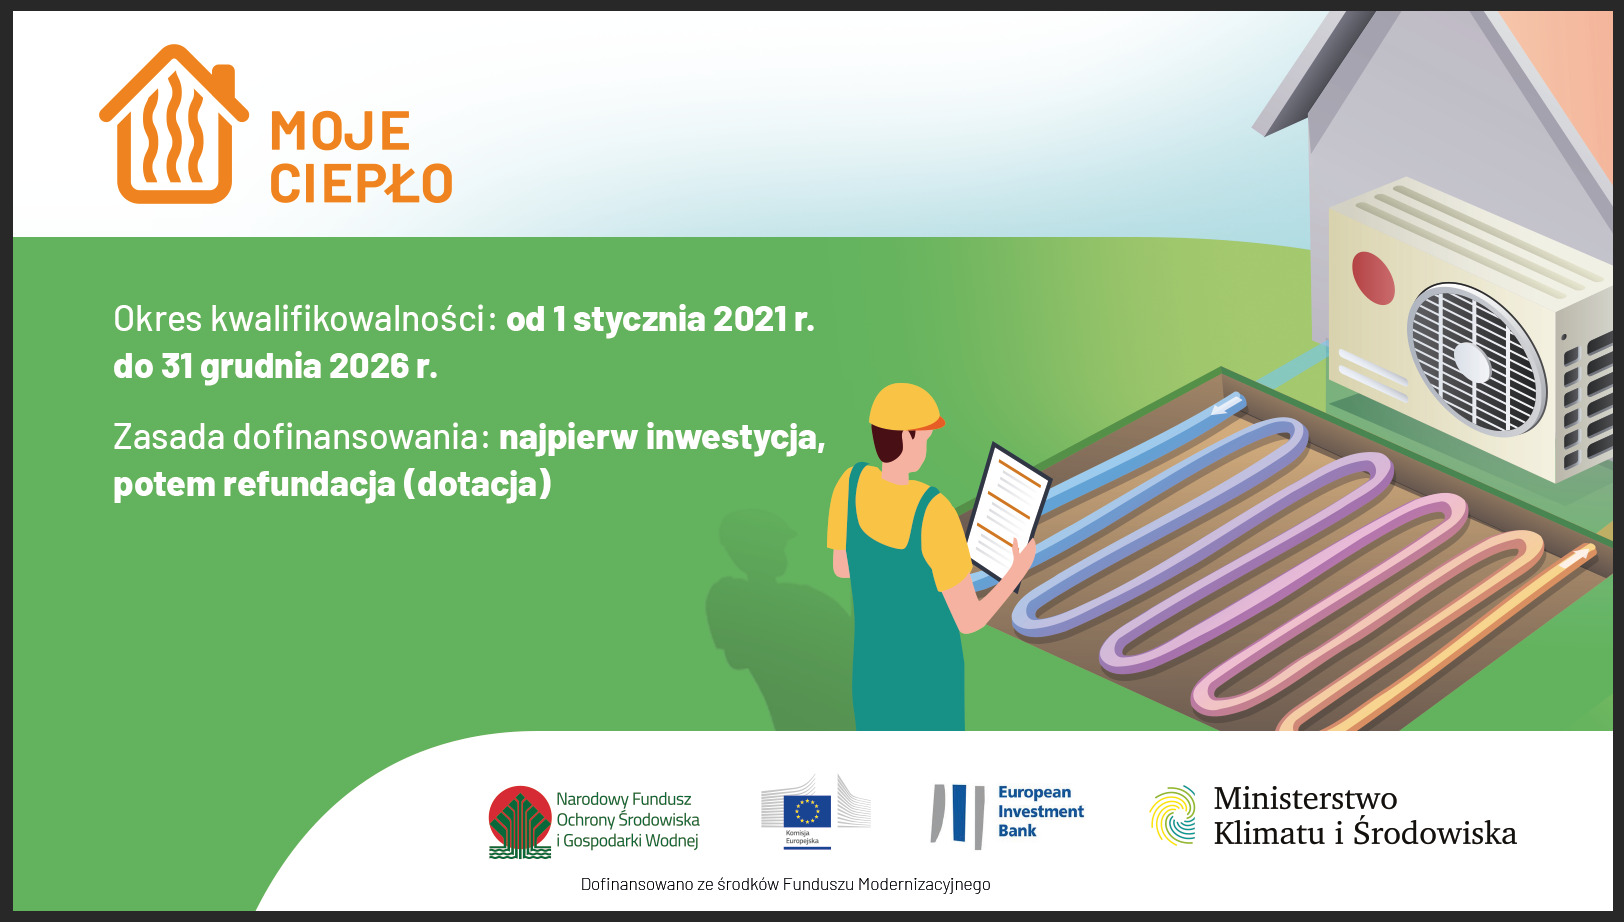 mkis program moje cieplo infografika 2 • ekoetos.pl